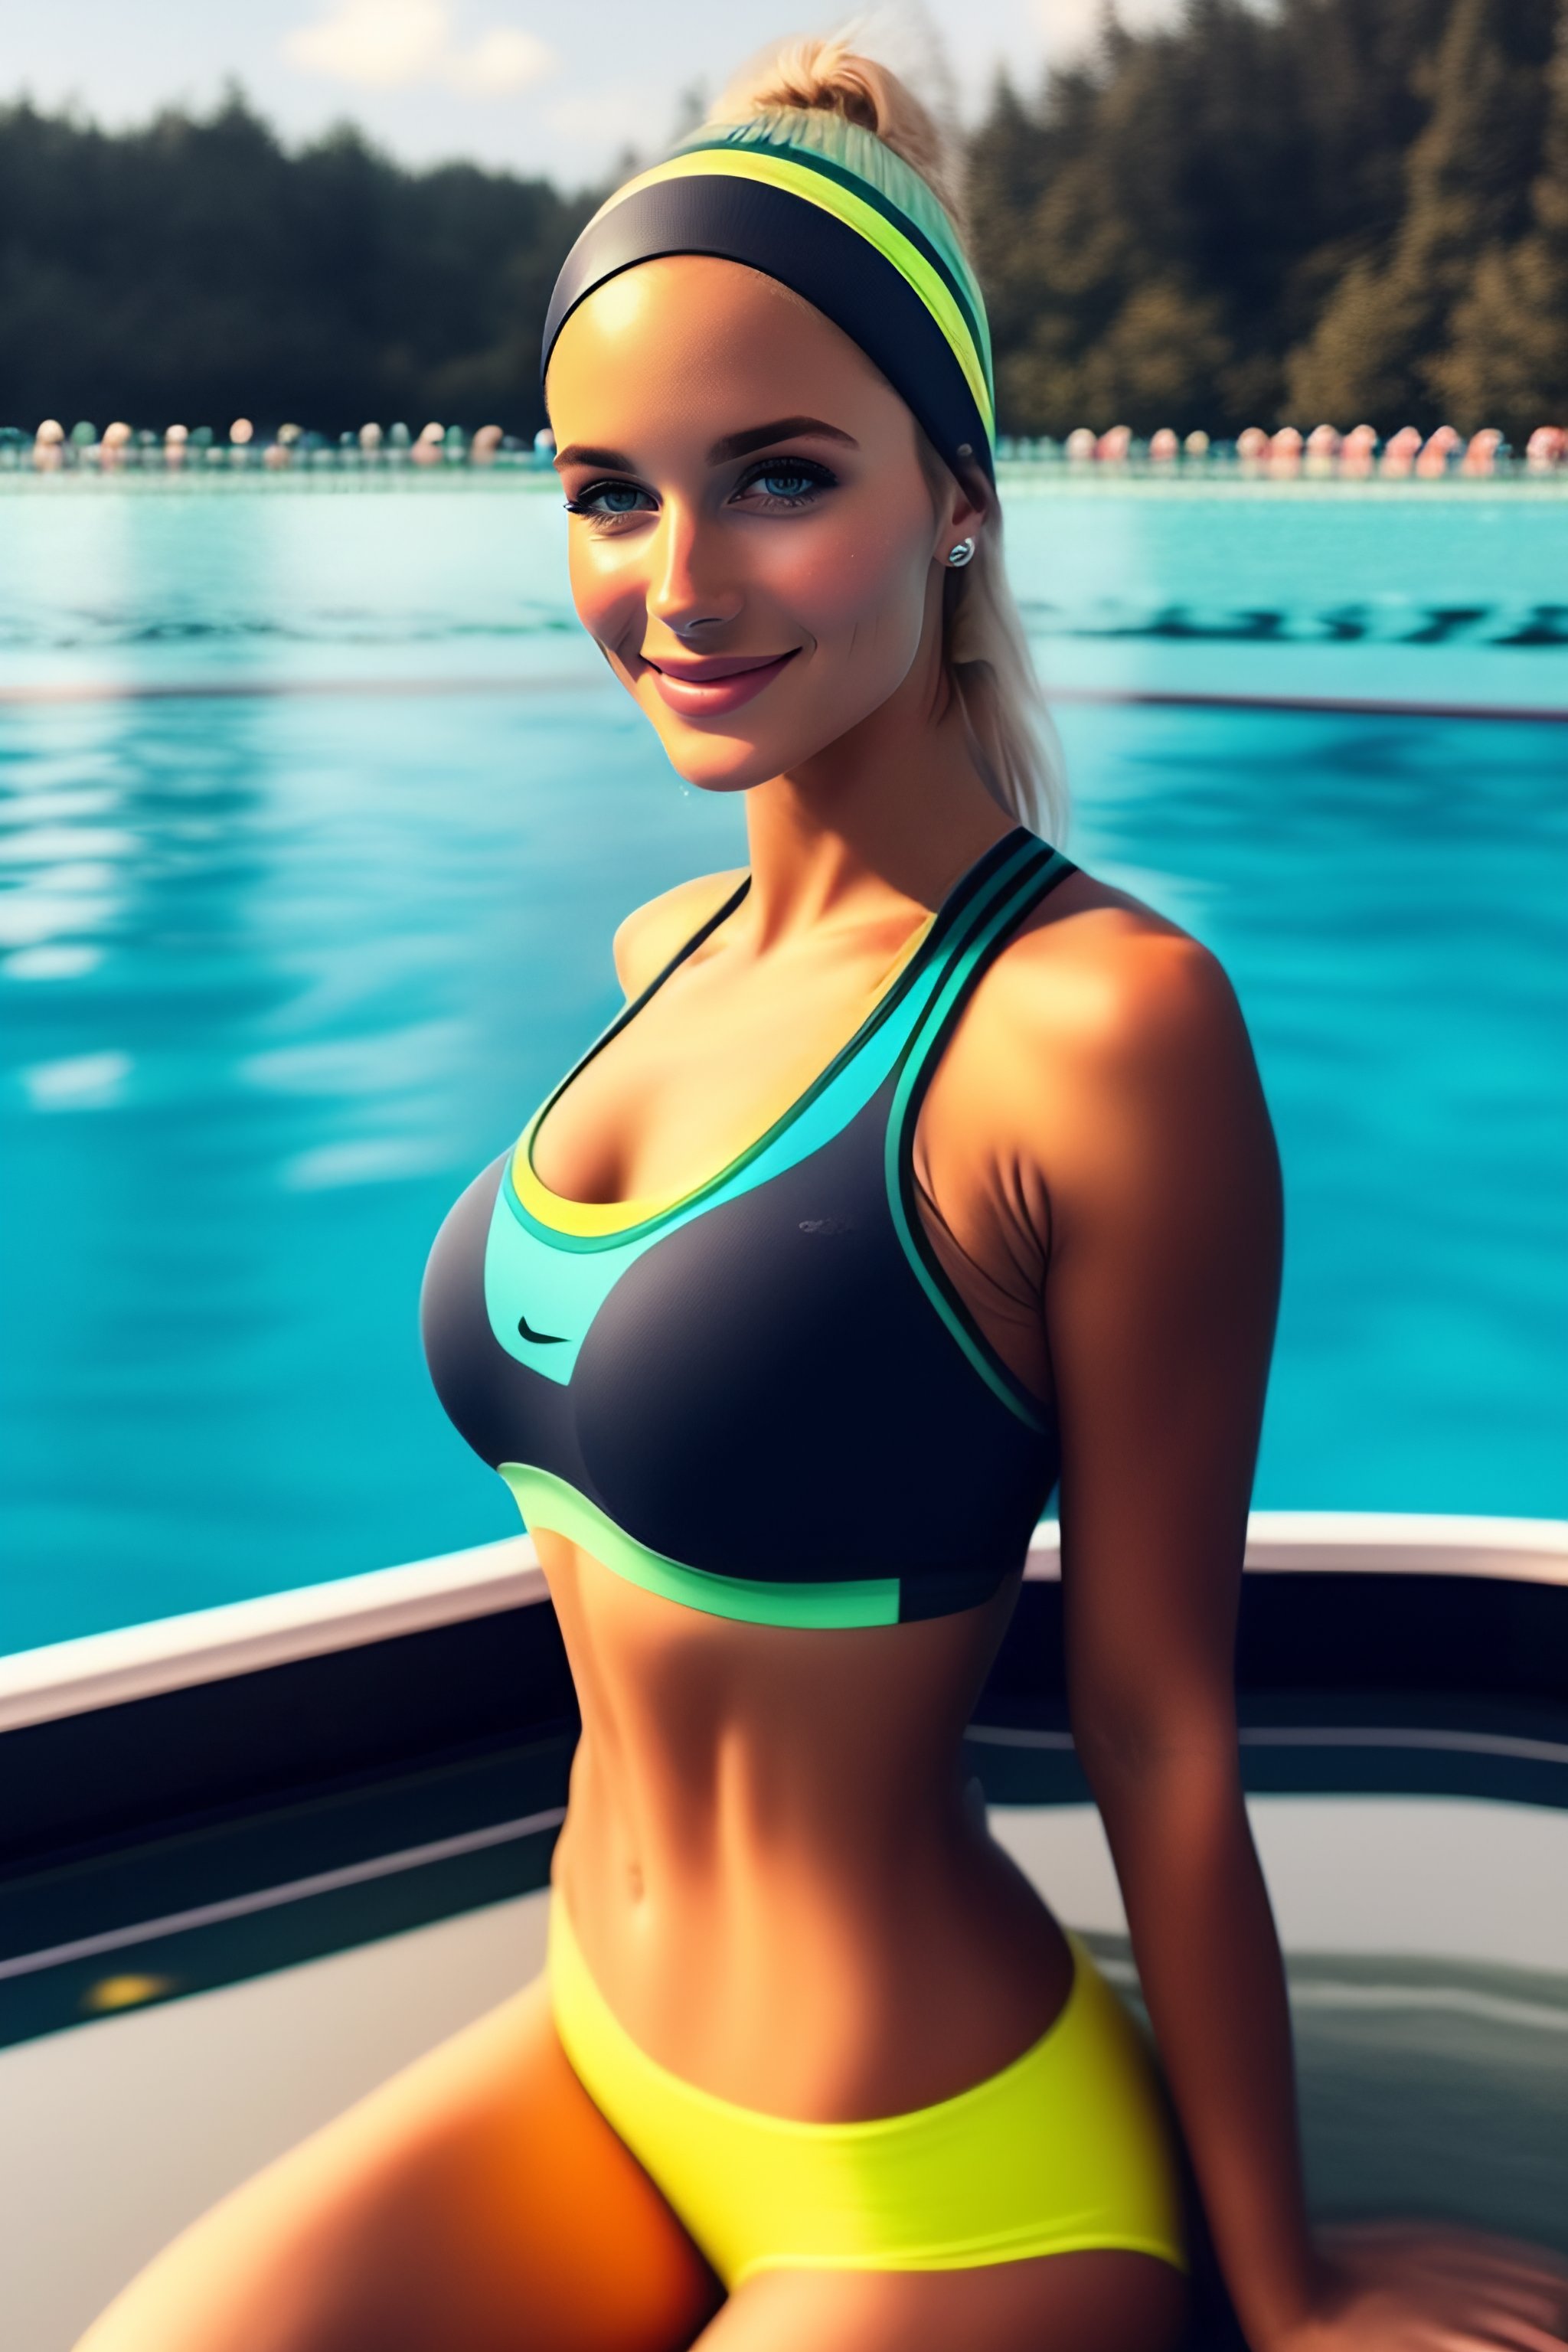 Lexica - A beautiful Russian cute girl wearing yoga pants swimming